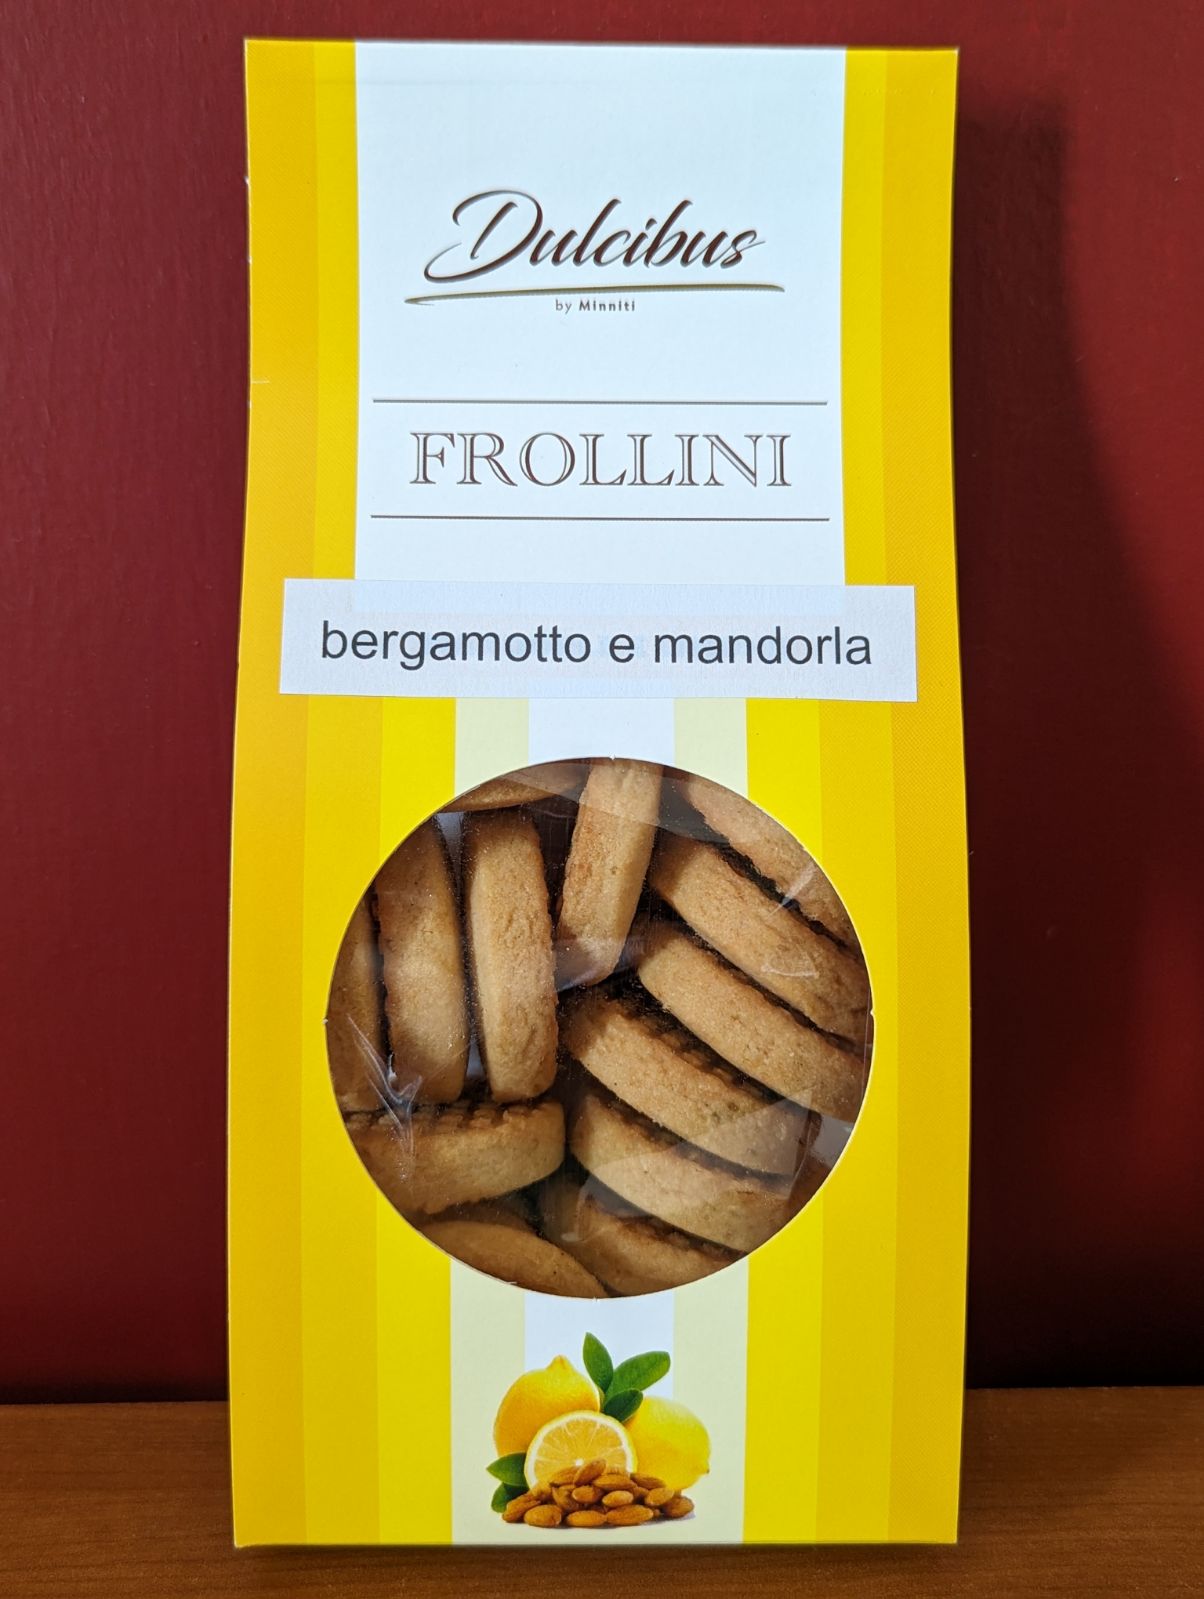 Frollini bergamotto e mandorla Dulcibus by Minniti